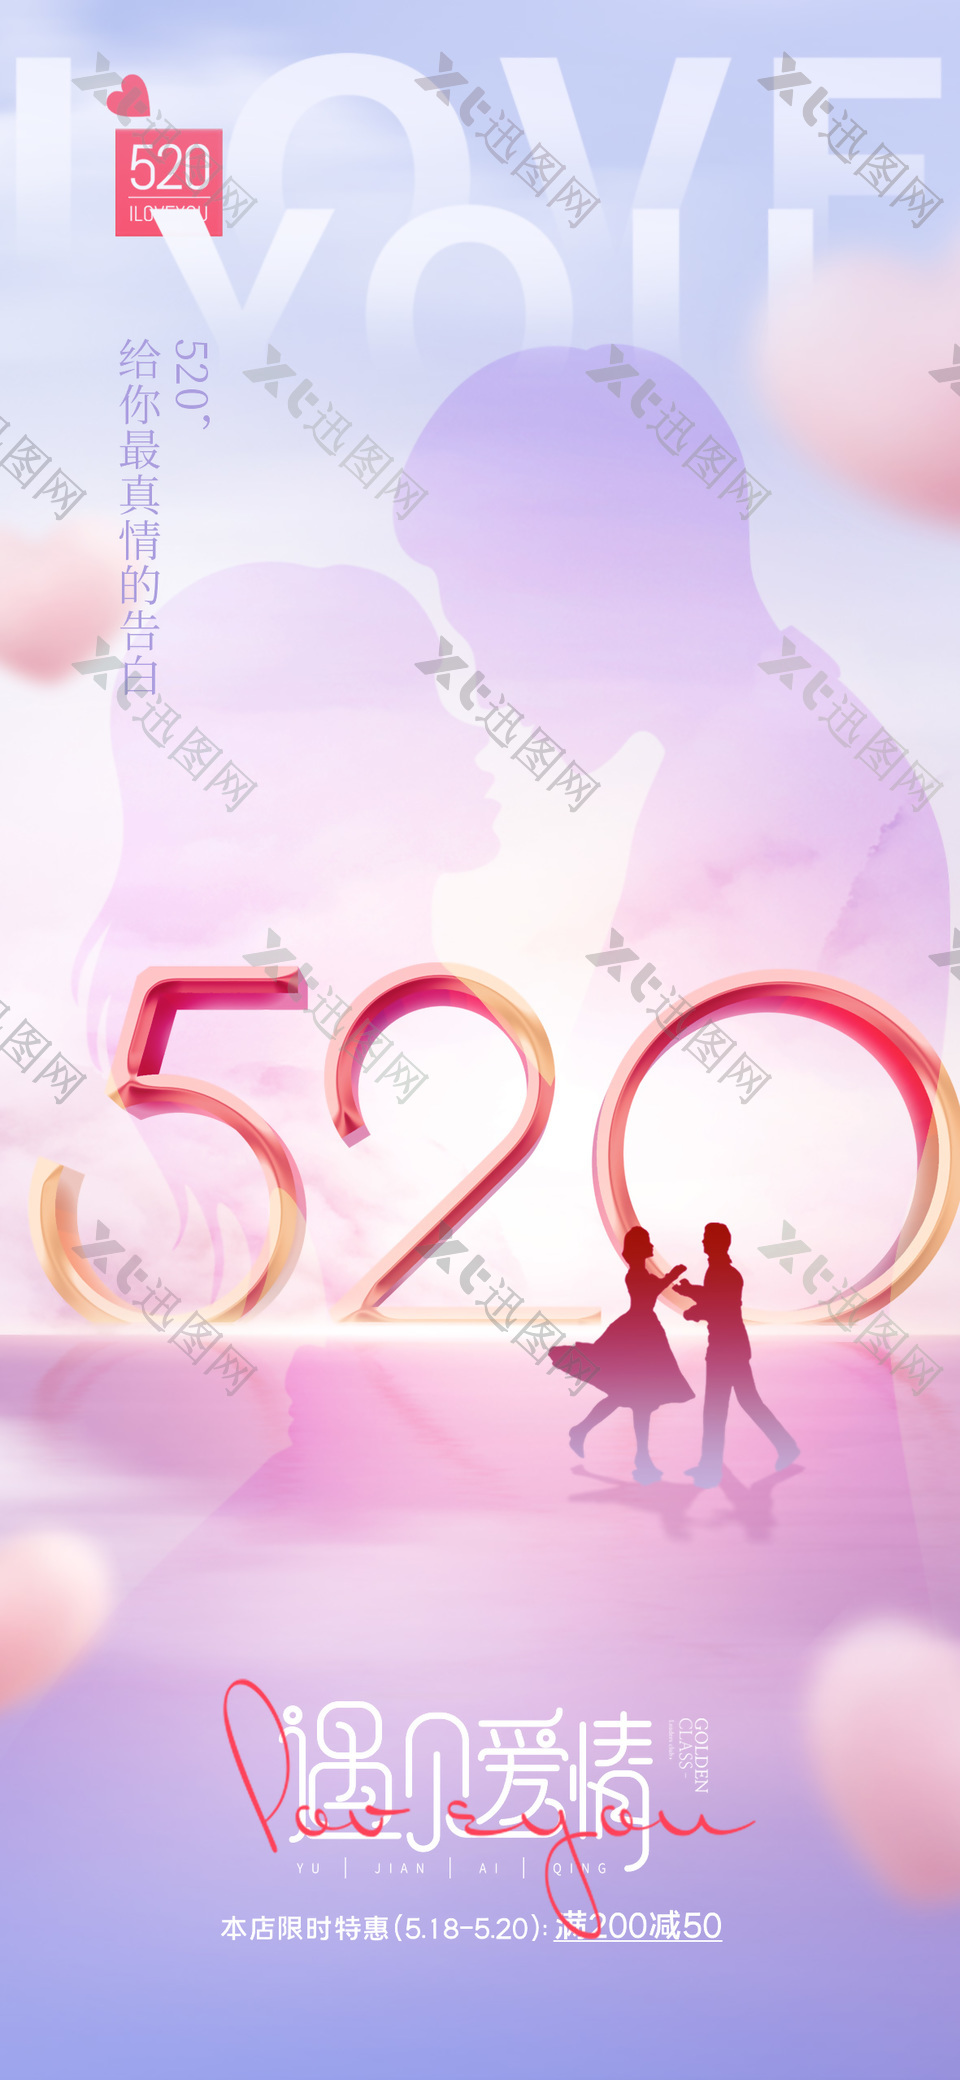 520遇见爱情限时特惠粉色剪影海报